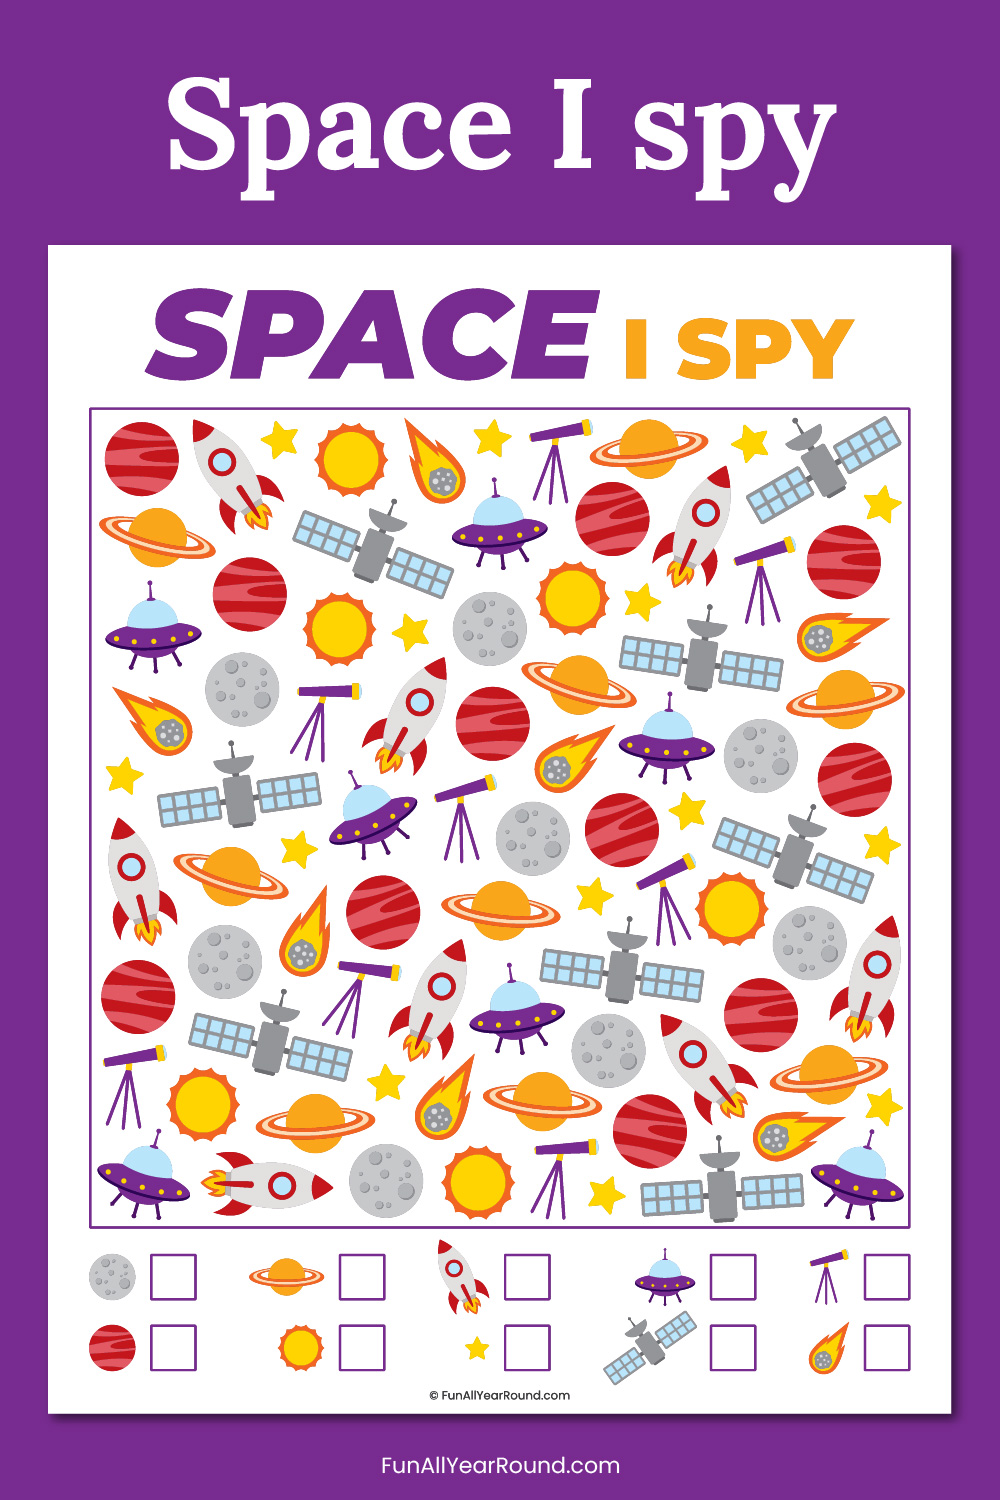 Space I spy